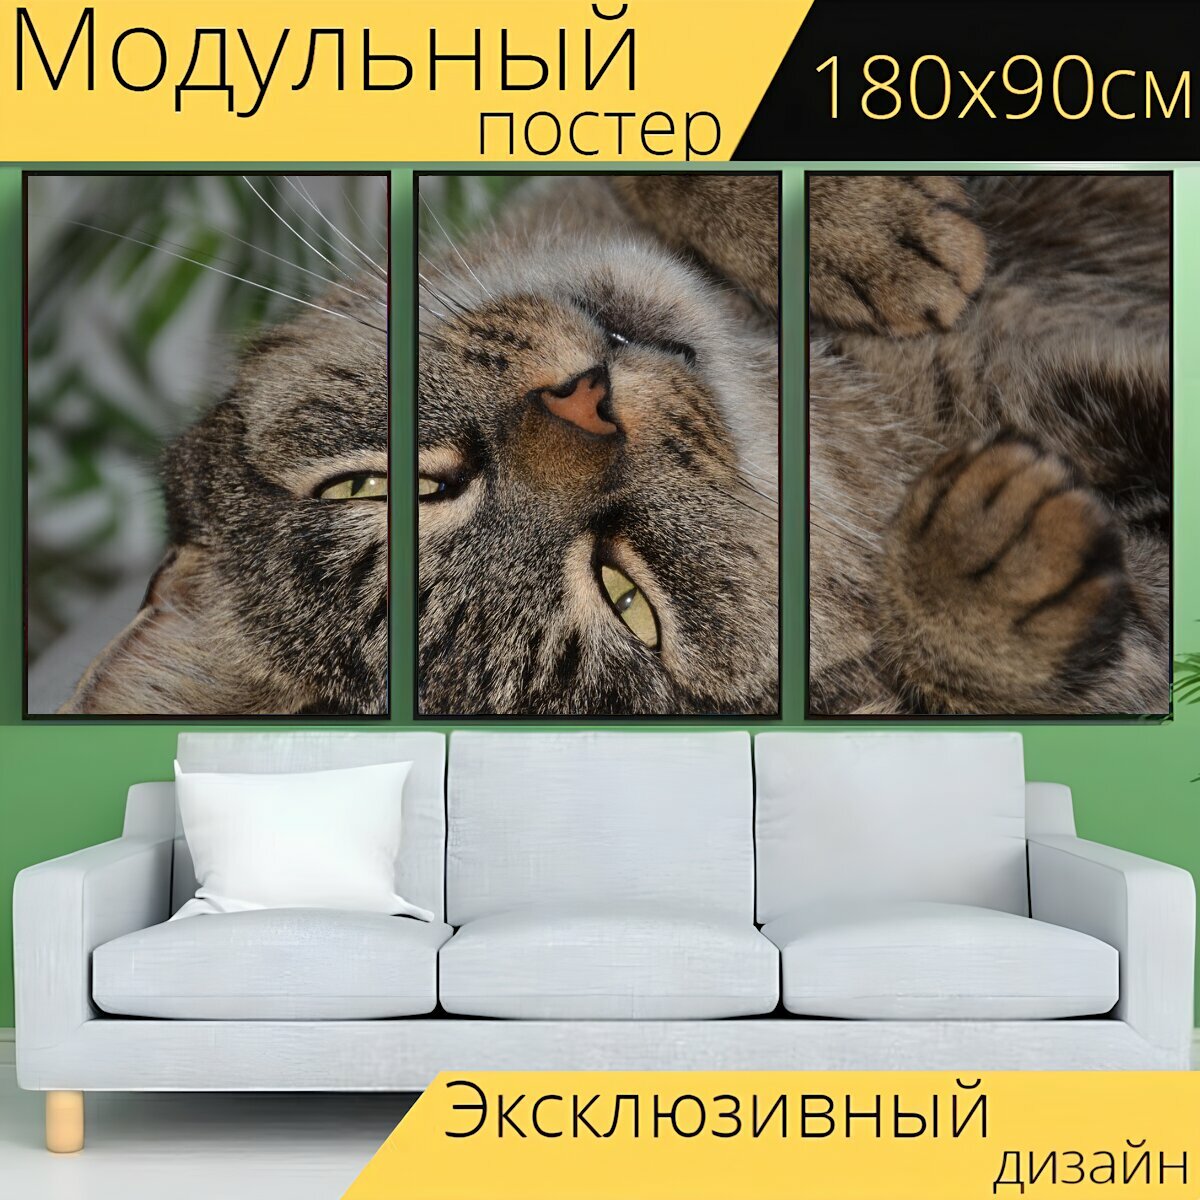 Модульный постер "Кот, похмелье, домашняя кошка" 180 x 90 см. для интерьера